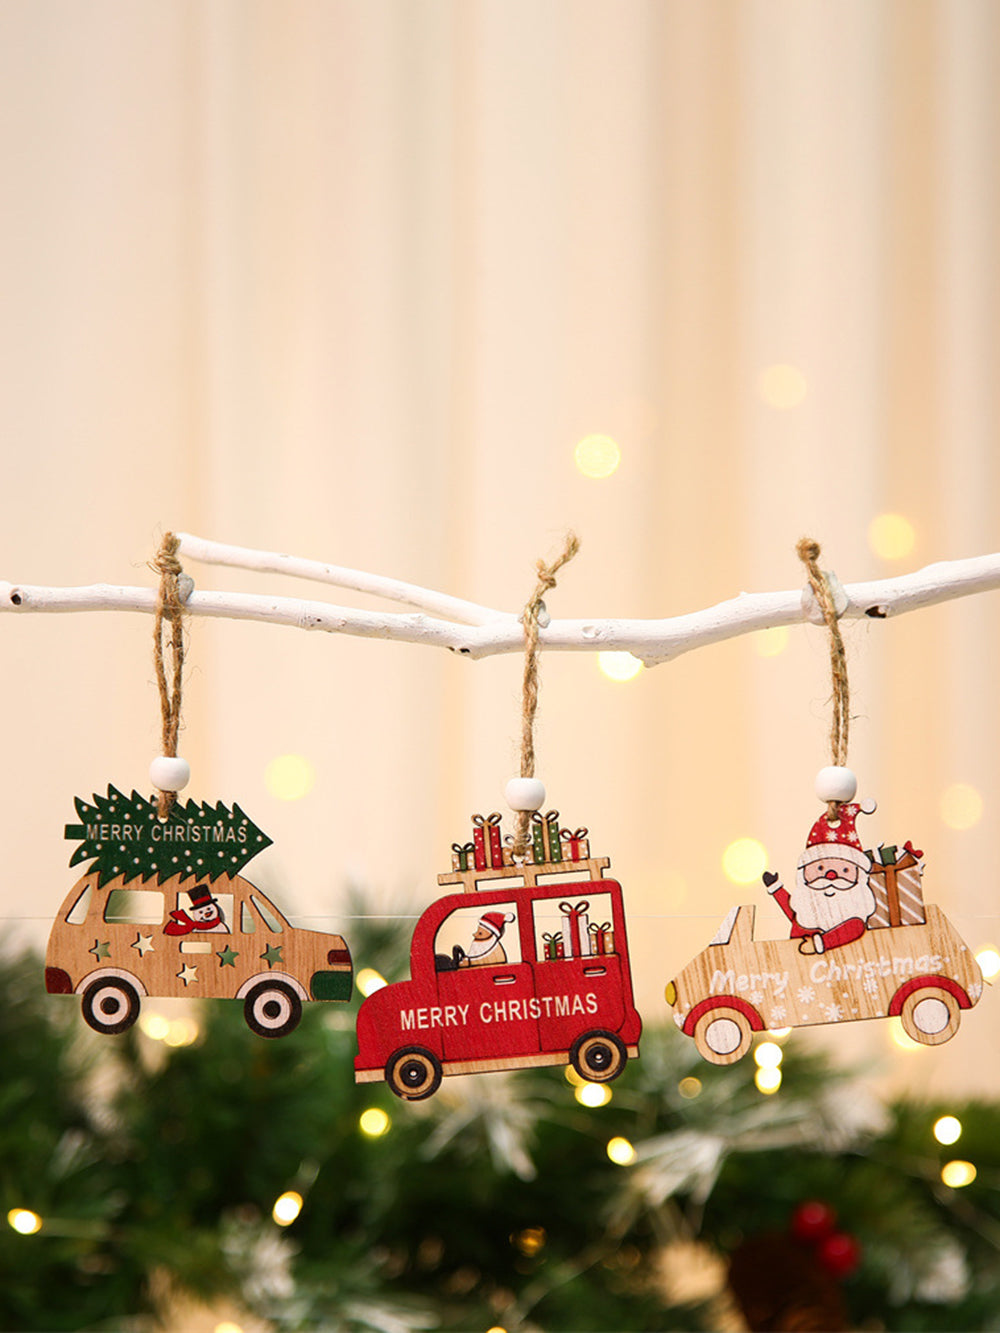 9 個のクリスマスツリーの装飾ギフトボックスと小さな装飾品